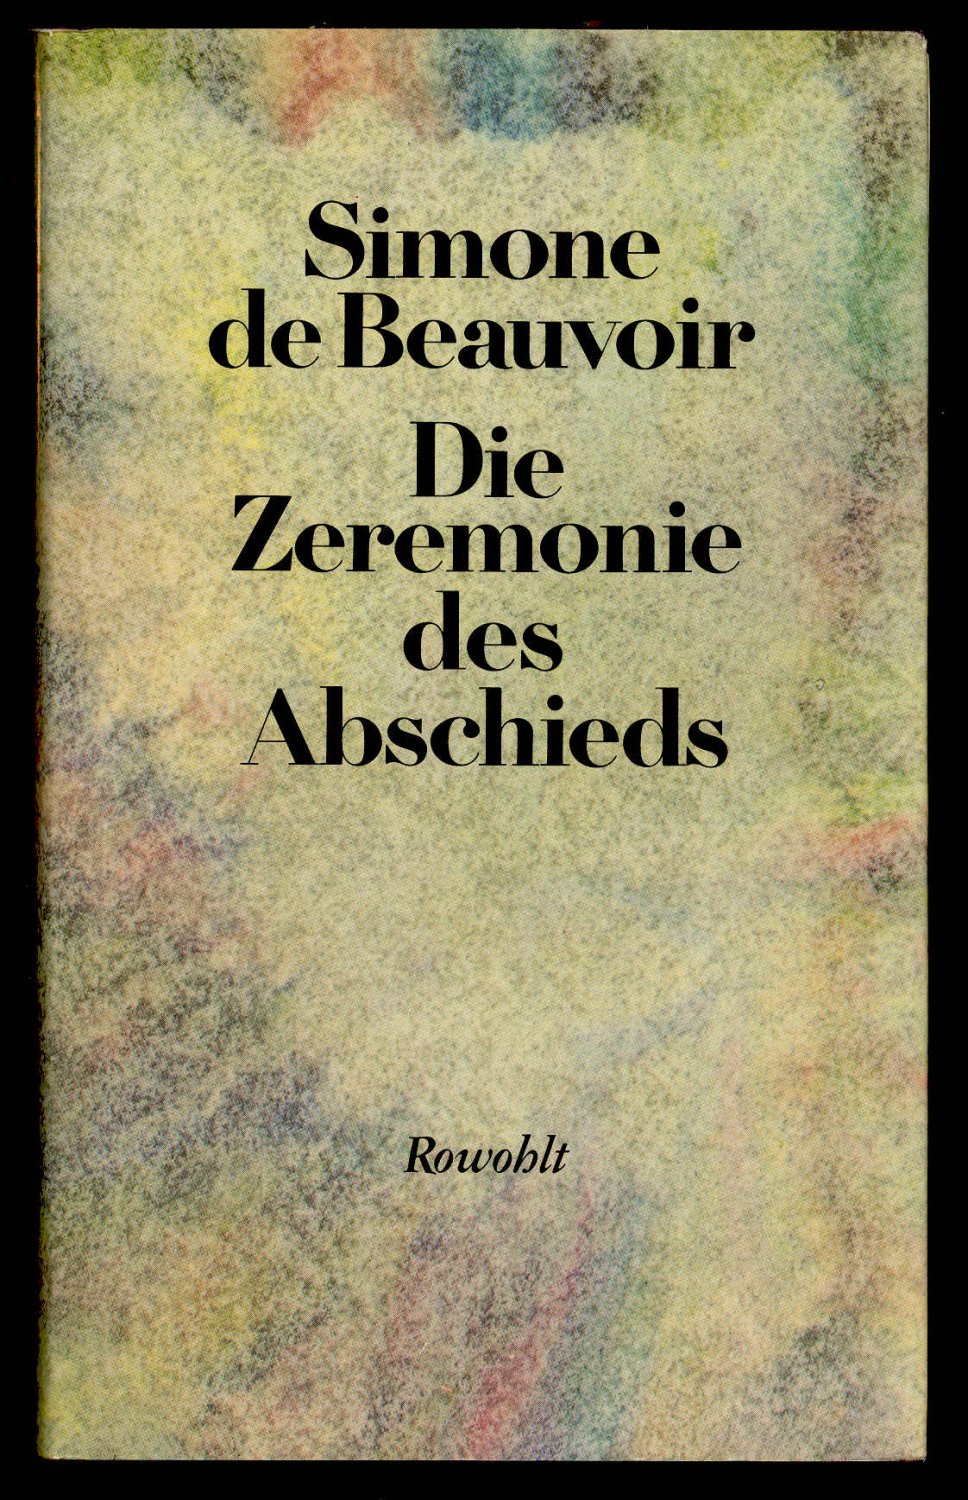 Die Zeremonie des Abschieds und Gespräche mit Jean-Paul Sartre Beauvoir: Memoiren, Band 5 August September 1974 